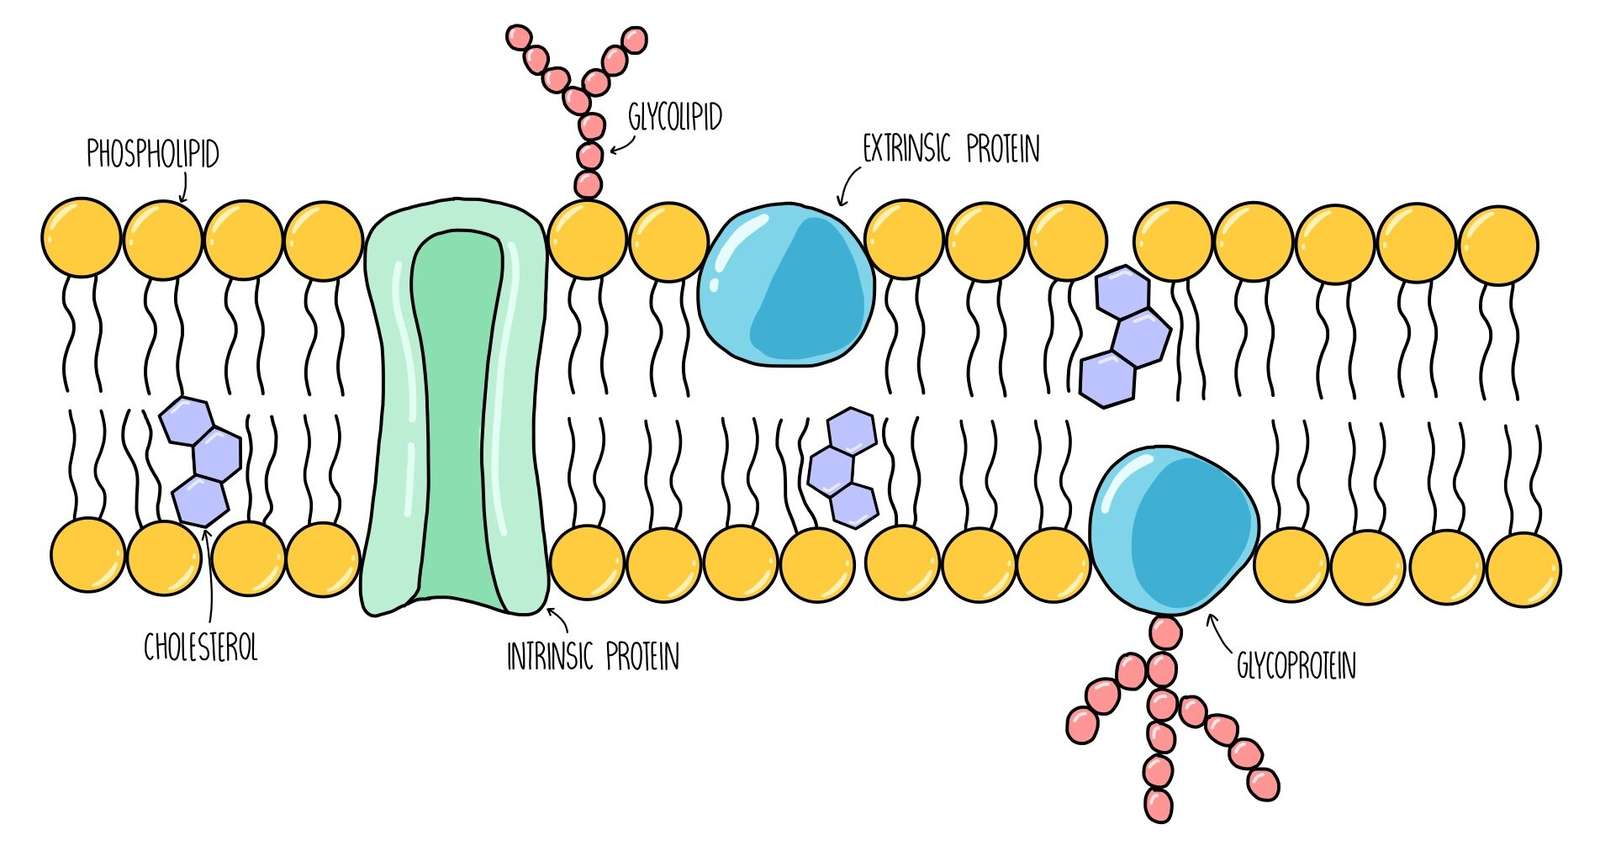 κυτταρική μεμβράνη online παζλ